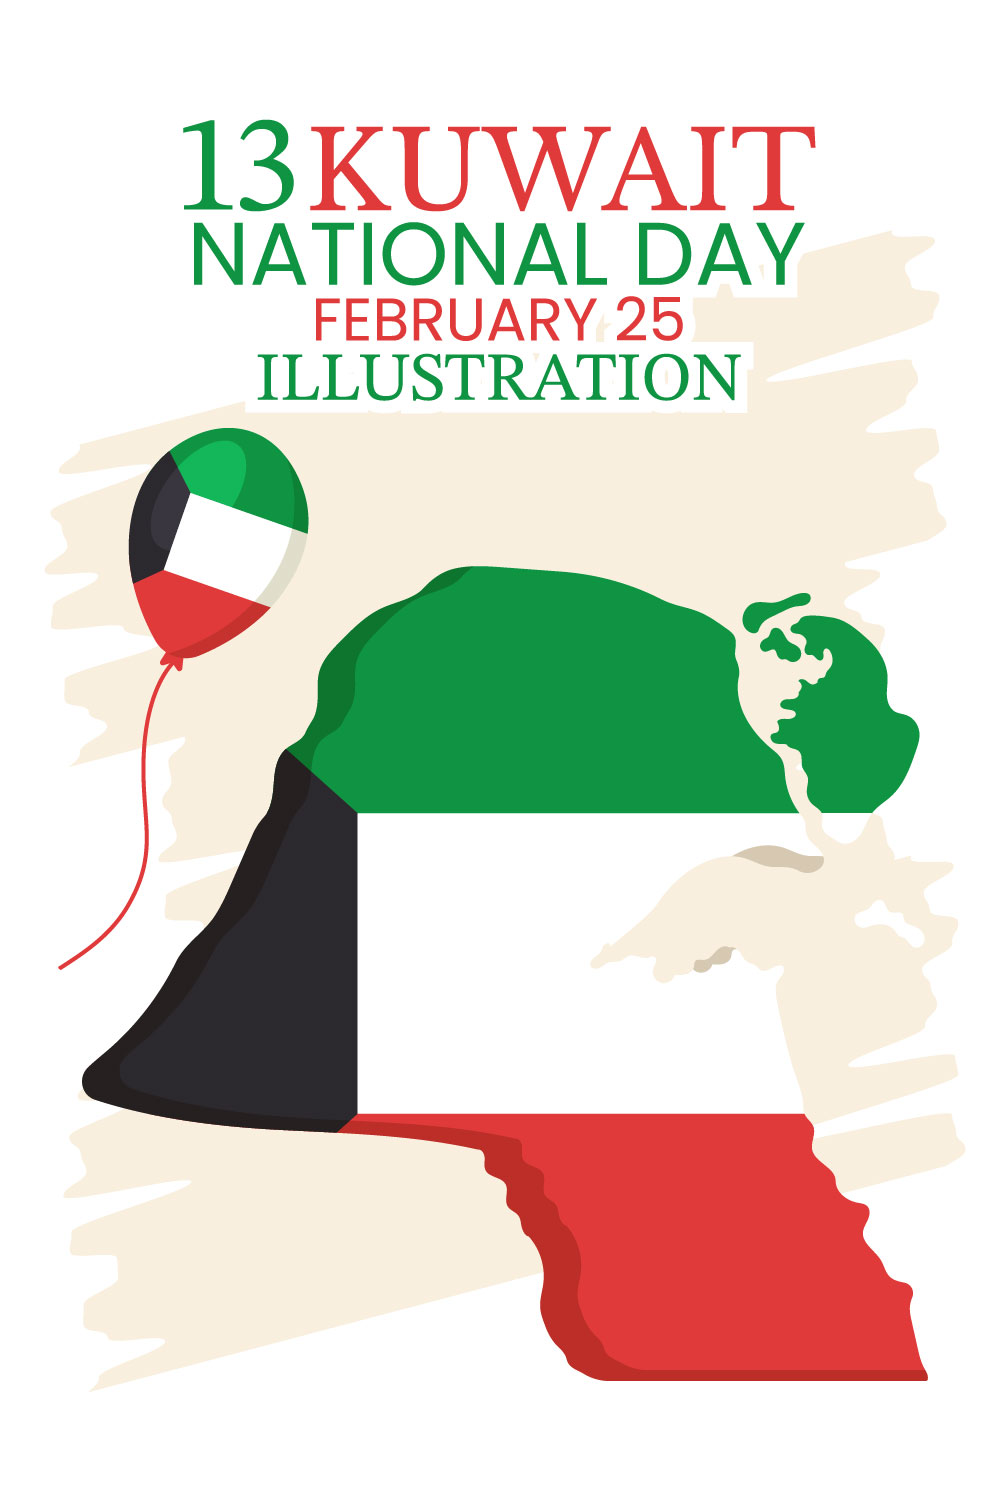 National Kuwait Day Illustration pinterest image.